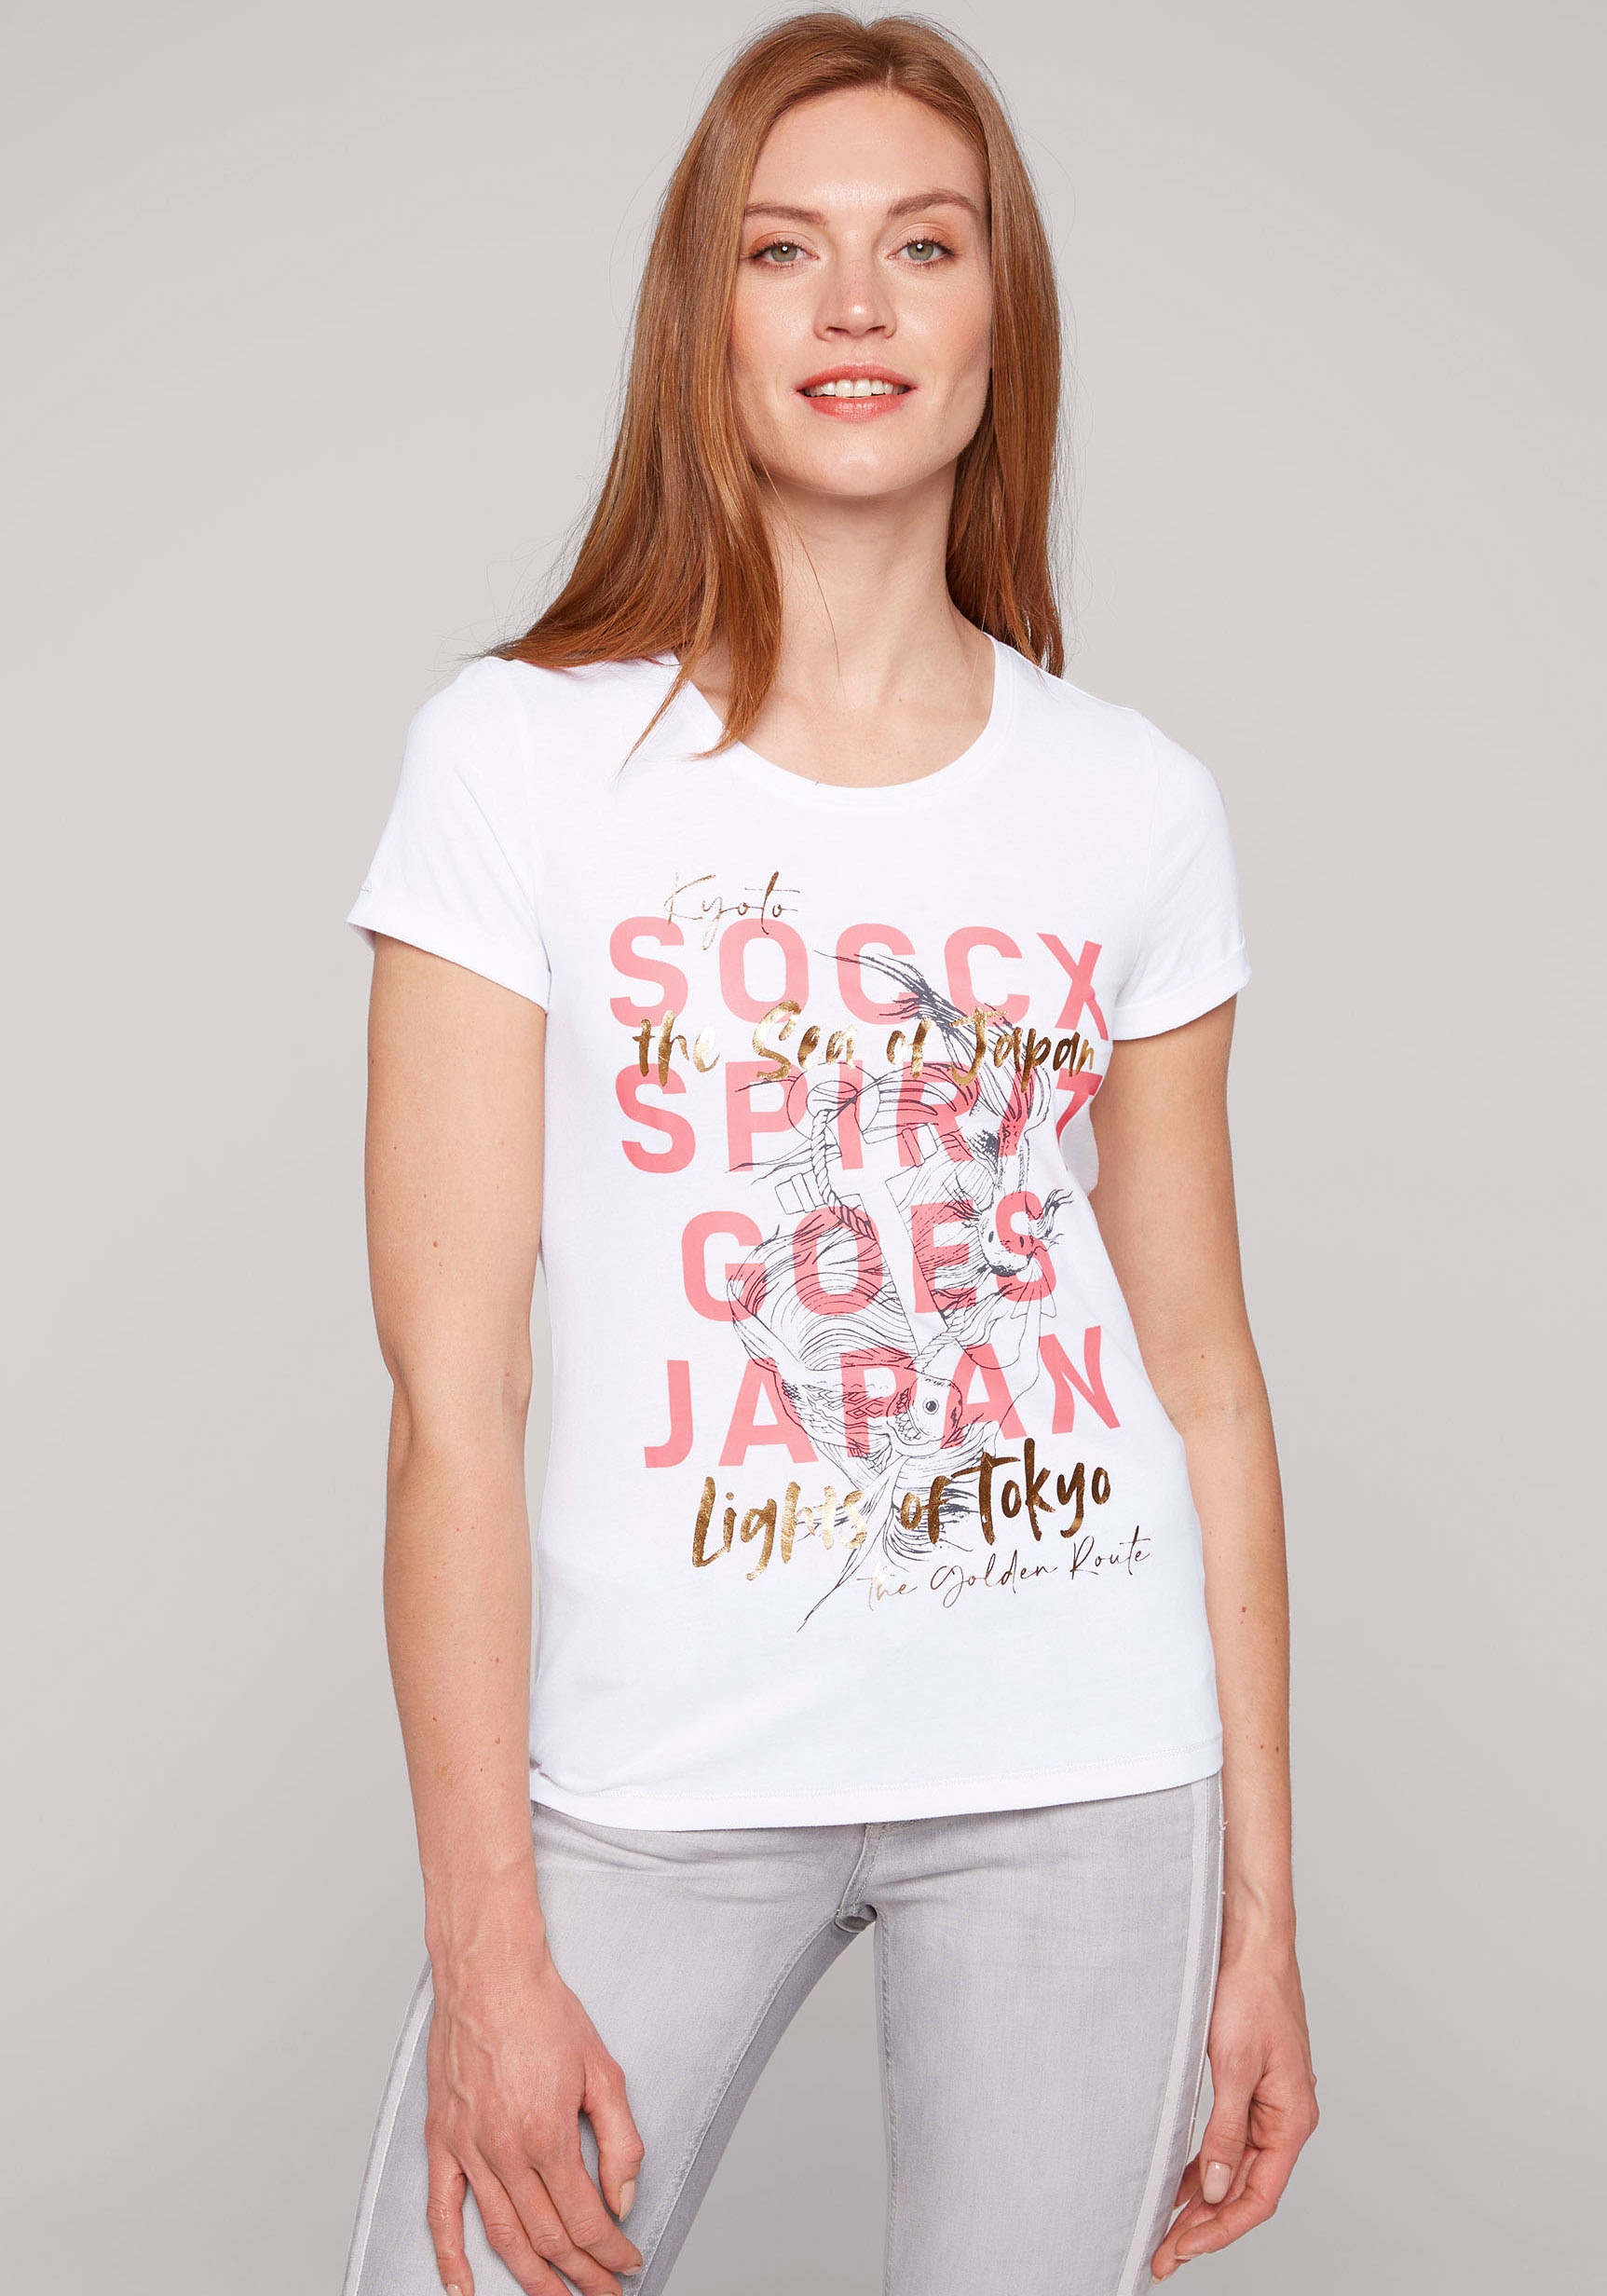 »Soccx SOCCX ♕ bei T-Shirt Damen T-Shirt«